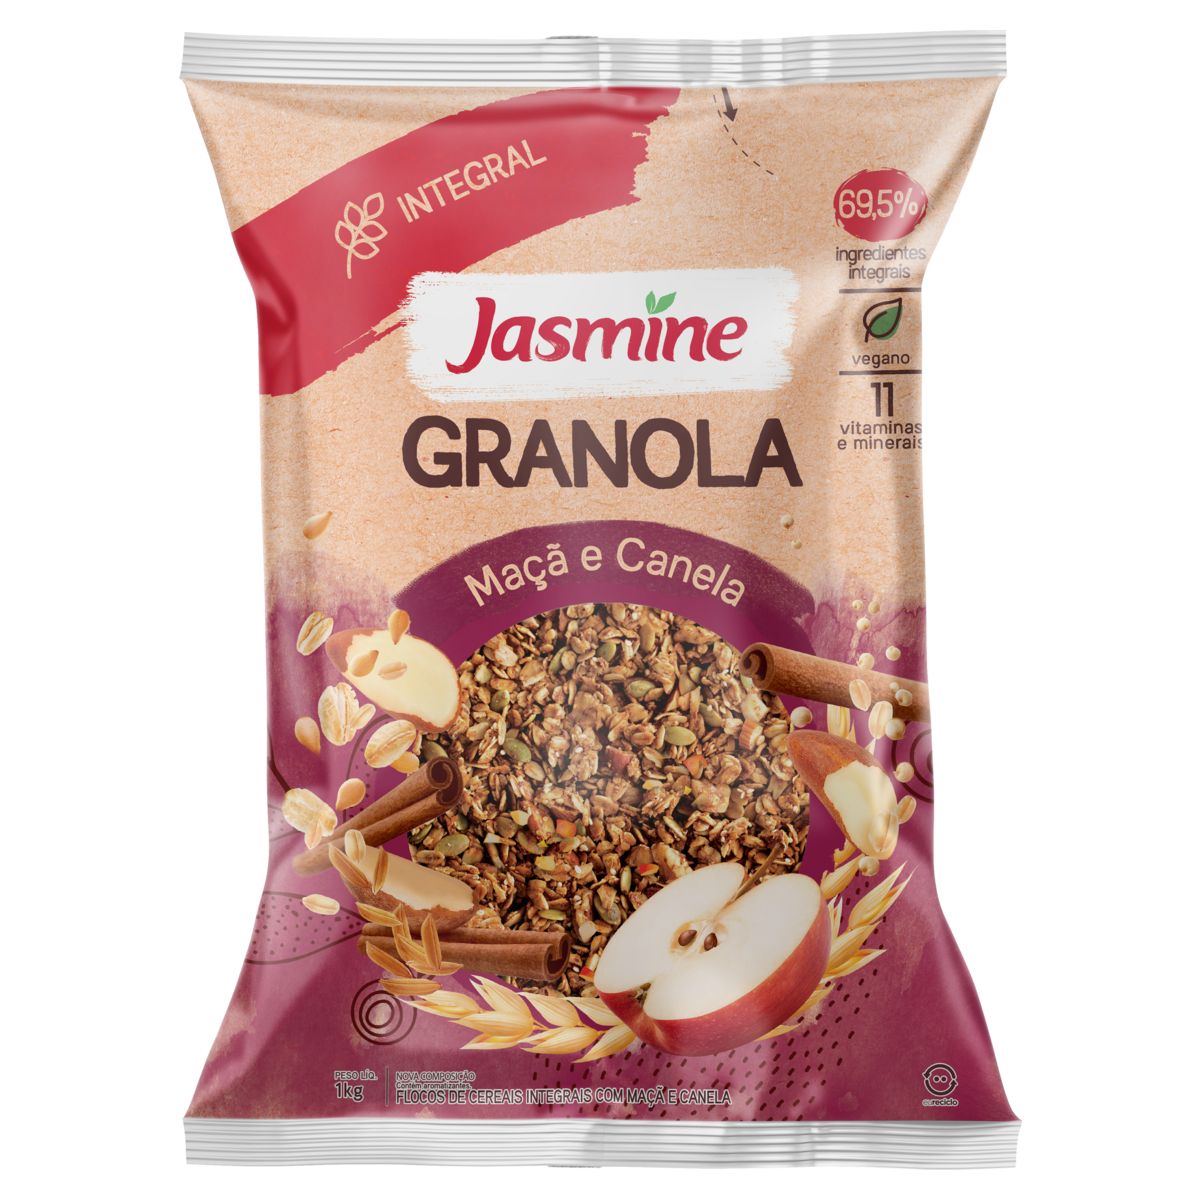 Granola Jasmine 69,5% Integral Maçã e Canela Pacote 1kg